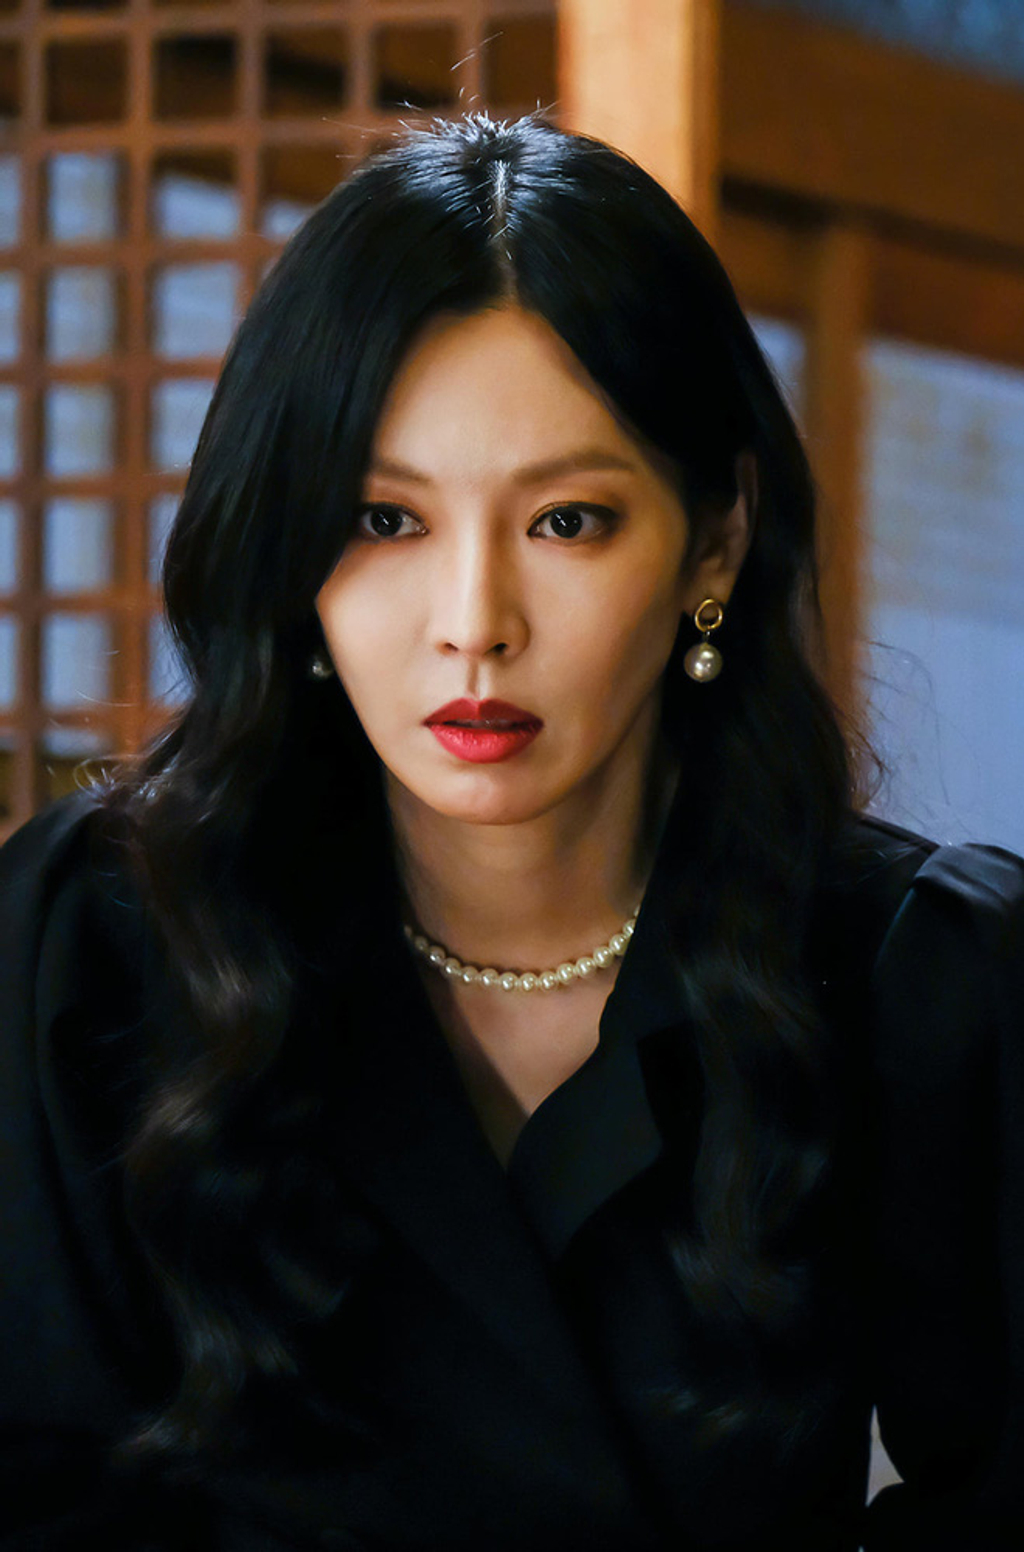 Trong phim, nhân vật cô giáo Cheon Seo Jin luôn xuất hiện với màu son đỏ đậm và đôi mắt được makeup tỉ mỉ để toát lên thần thái sắc sảo, lạnh lùng